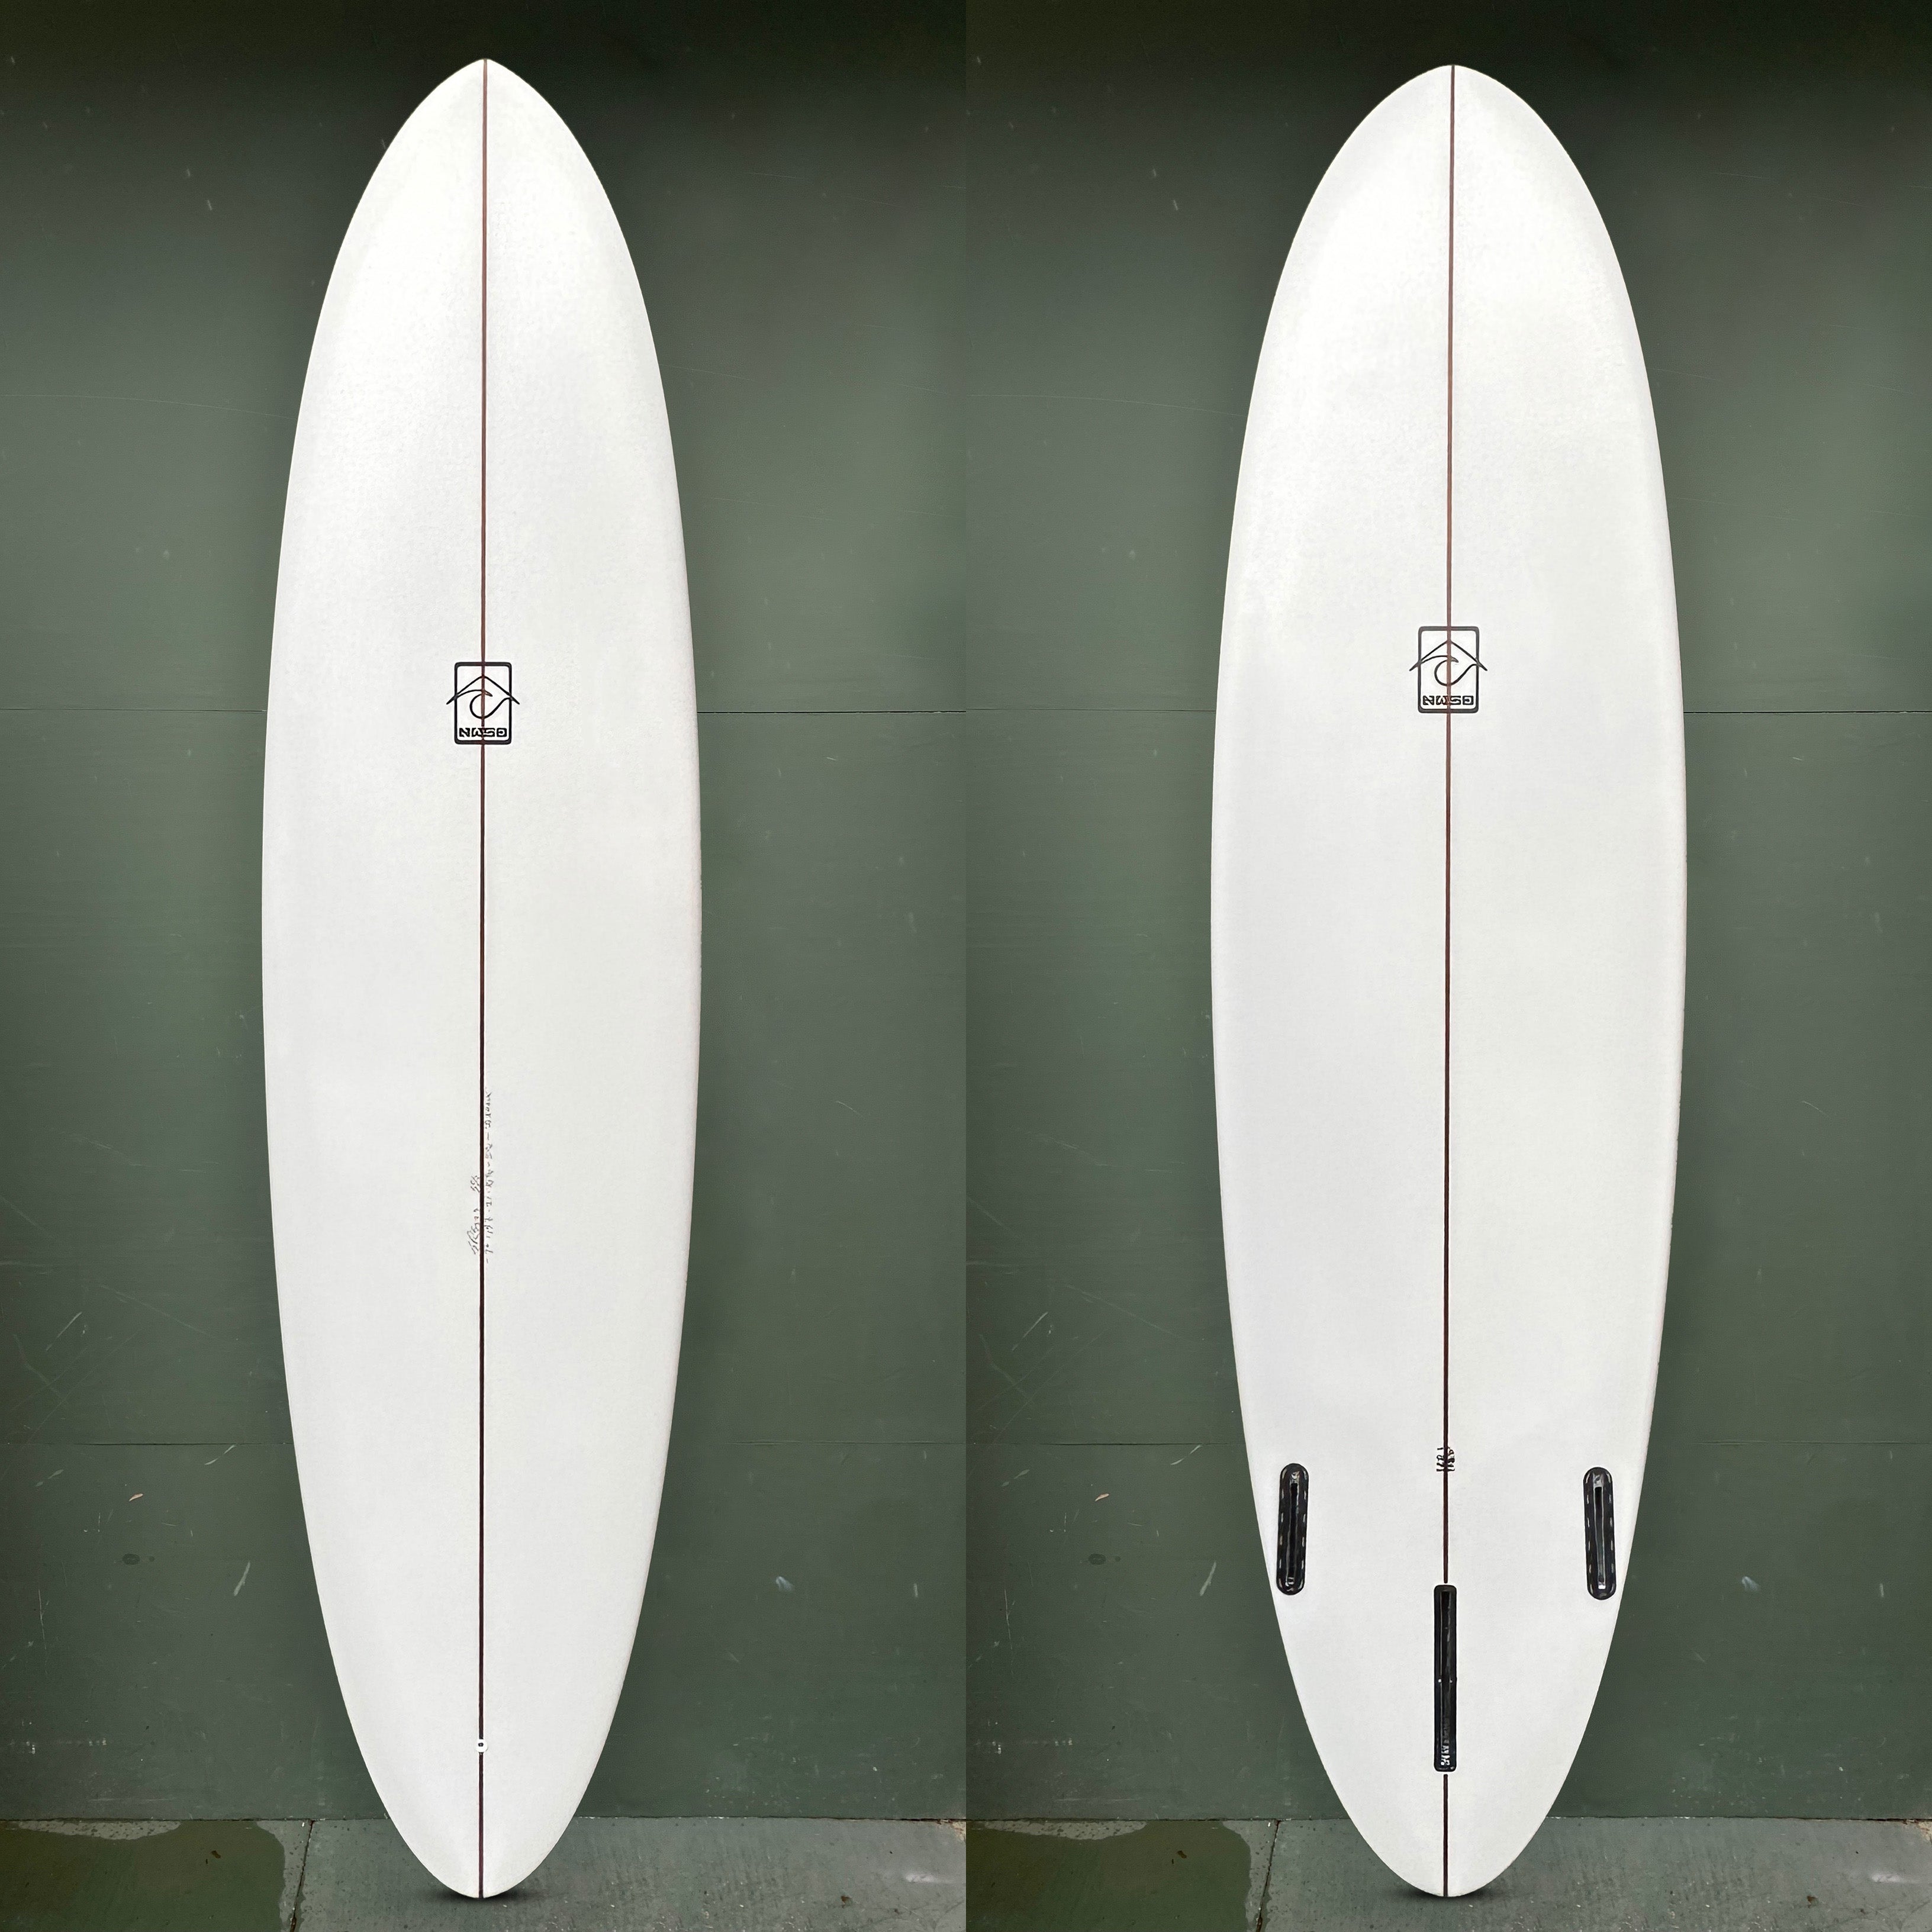 Northwest Surf Design Surfboards - 7'2" "Seahawk" Surfboard - Seaside Surf Shop 